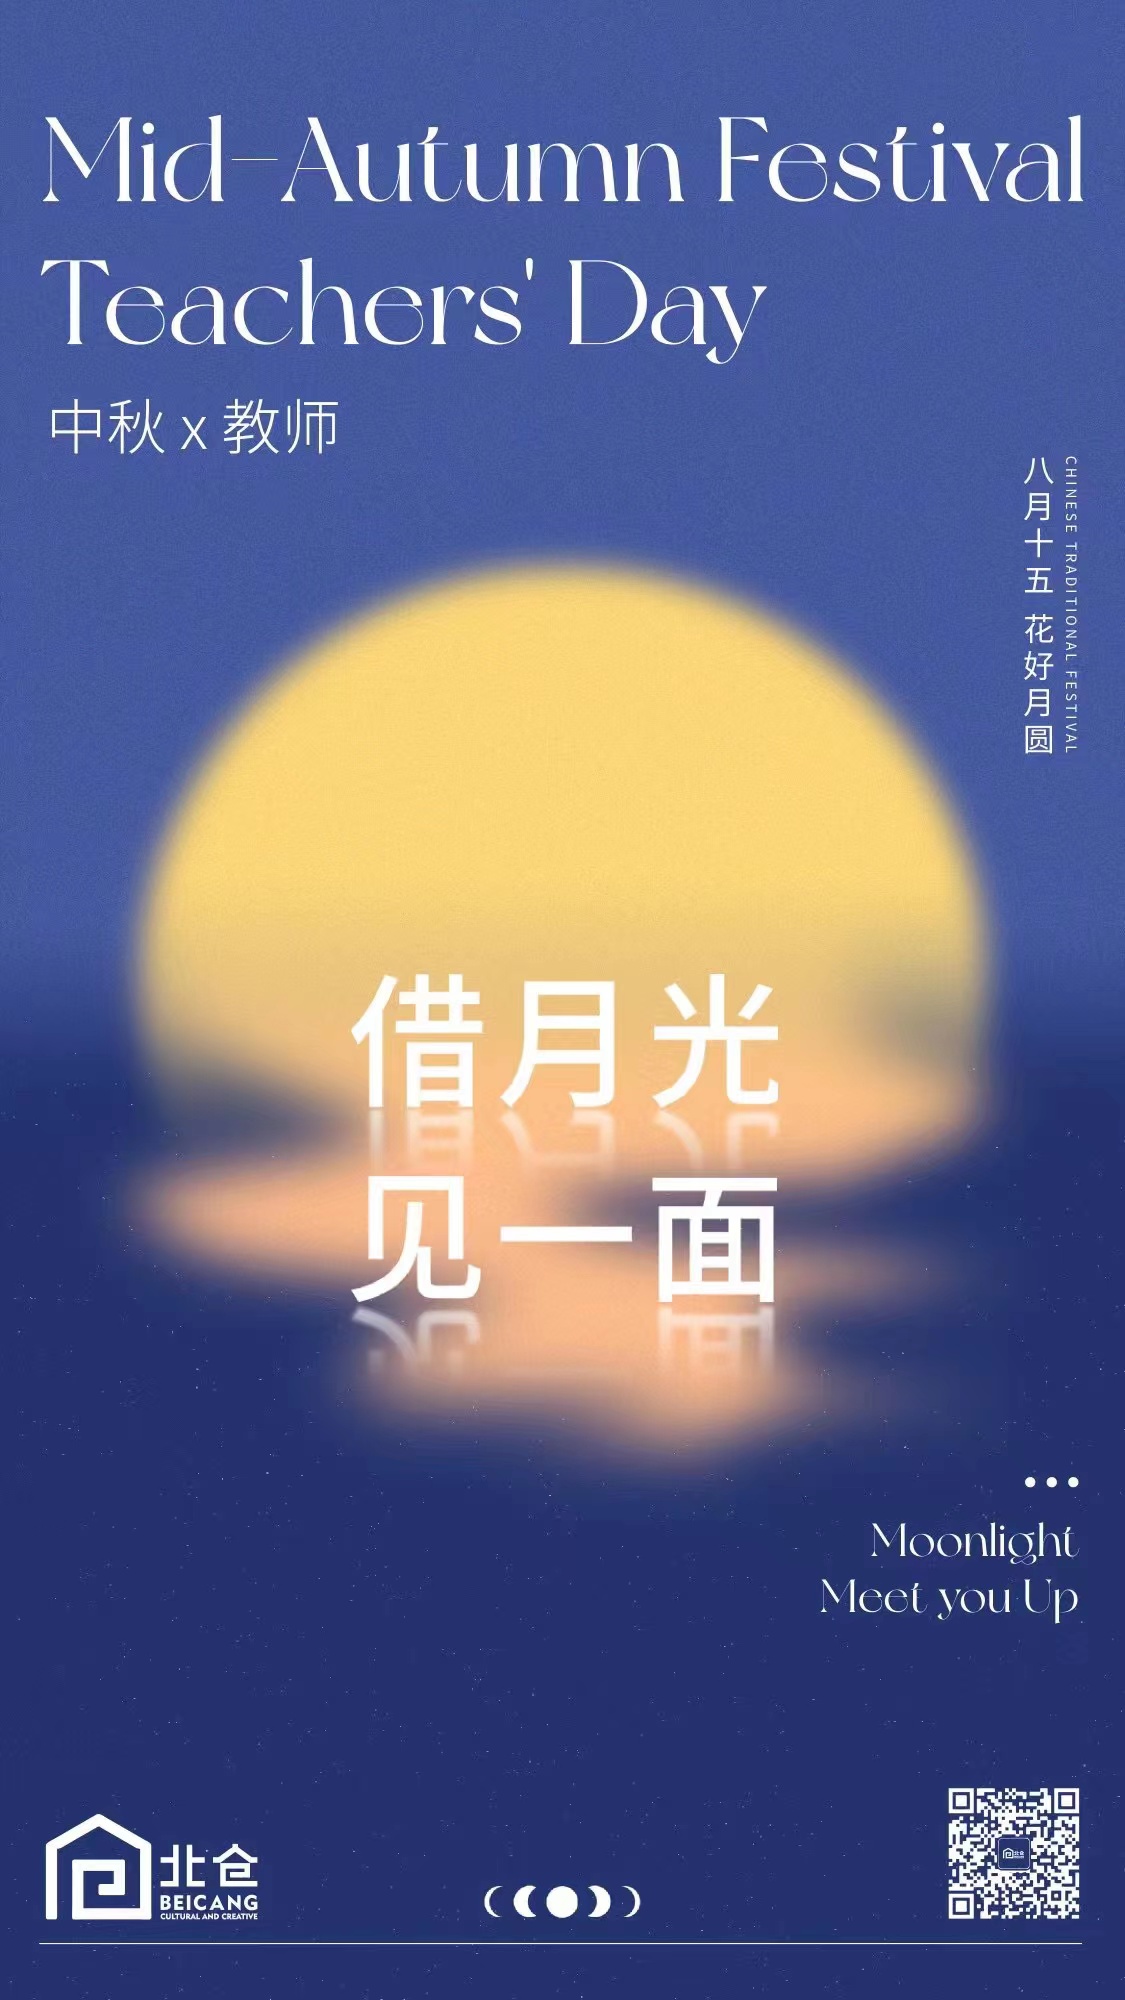 < (첫번째)충칭의 베이창 쫑치우제와 교사의 날 포스터, (두번째)베이징의 교민 한가위 포스터 - 출처: 베이창 문화창조단지, 북경한국인회 제공 >